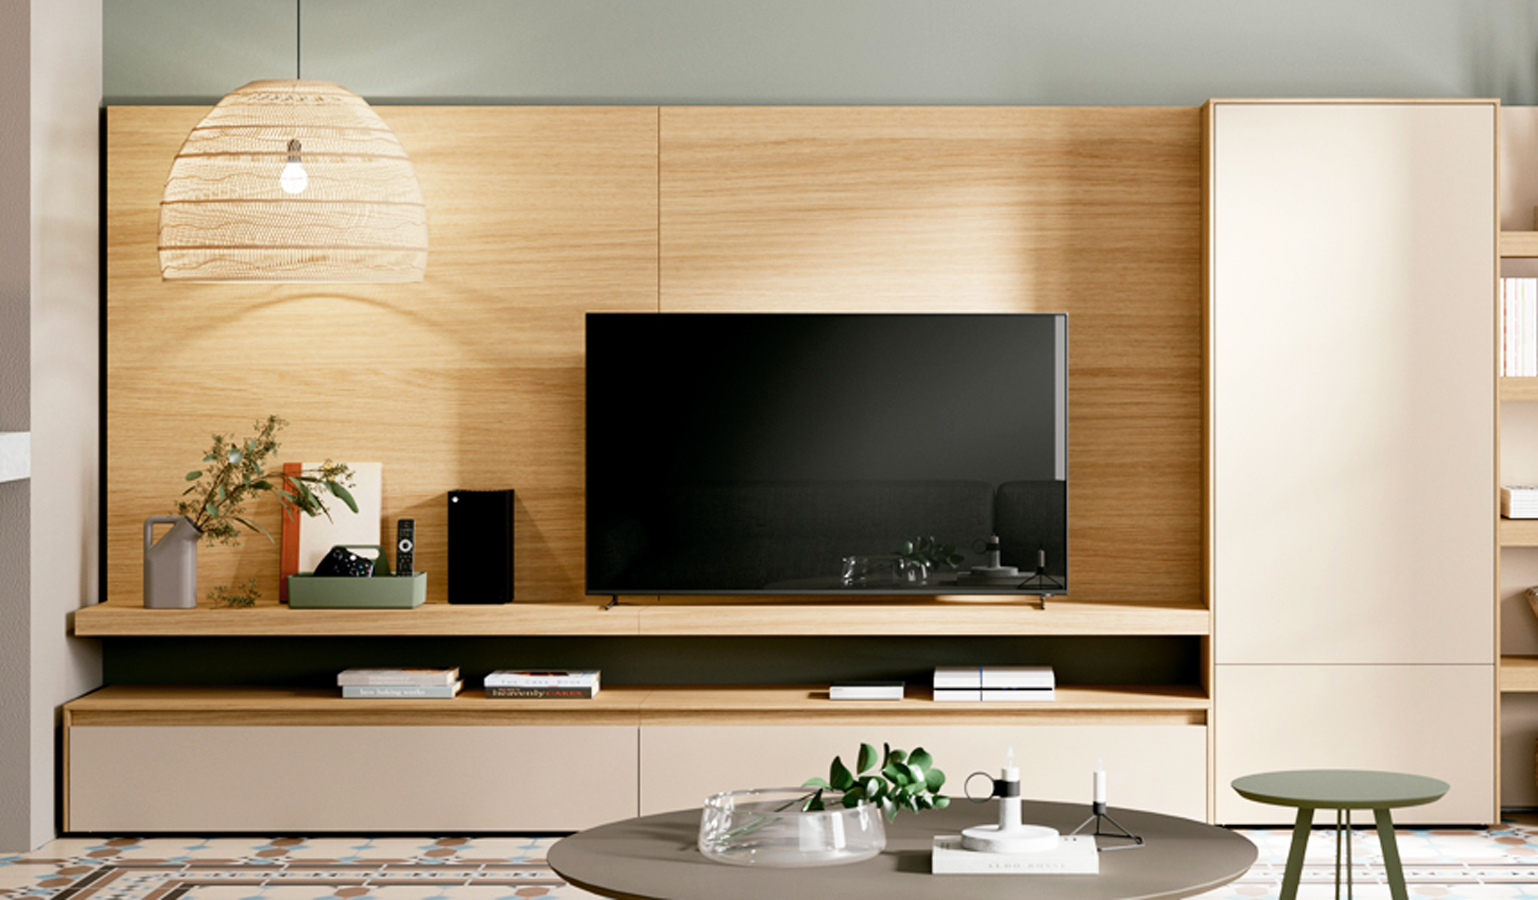 Mueble de TV de roble 180 cm - Mobiliario de almacenaje de salón